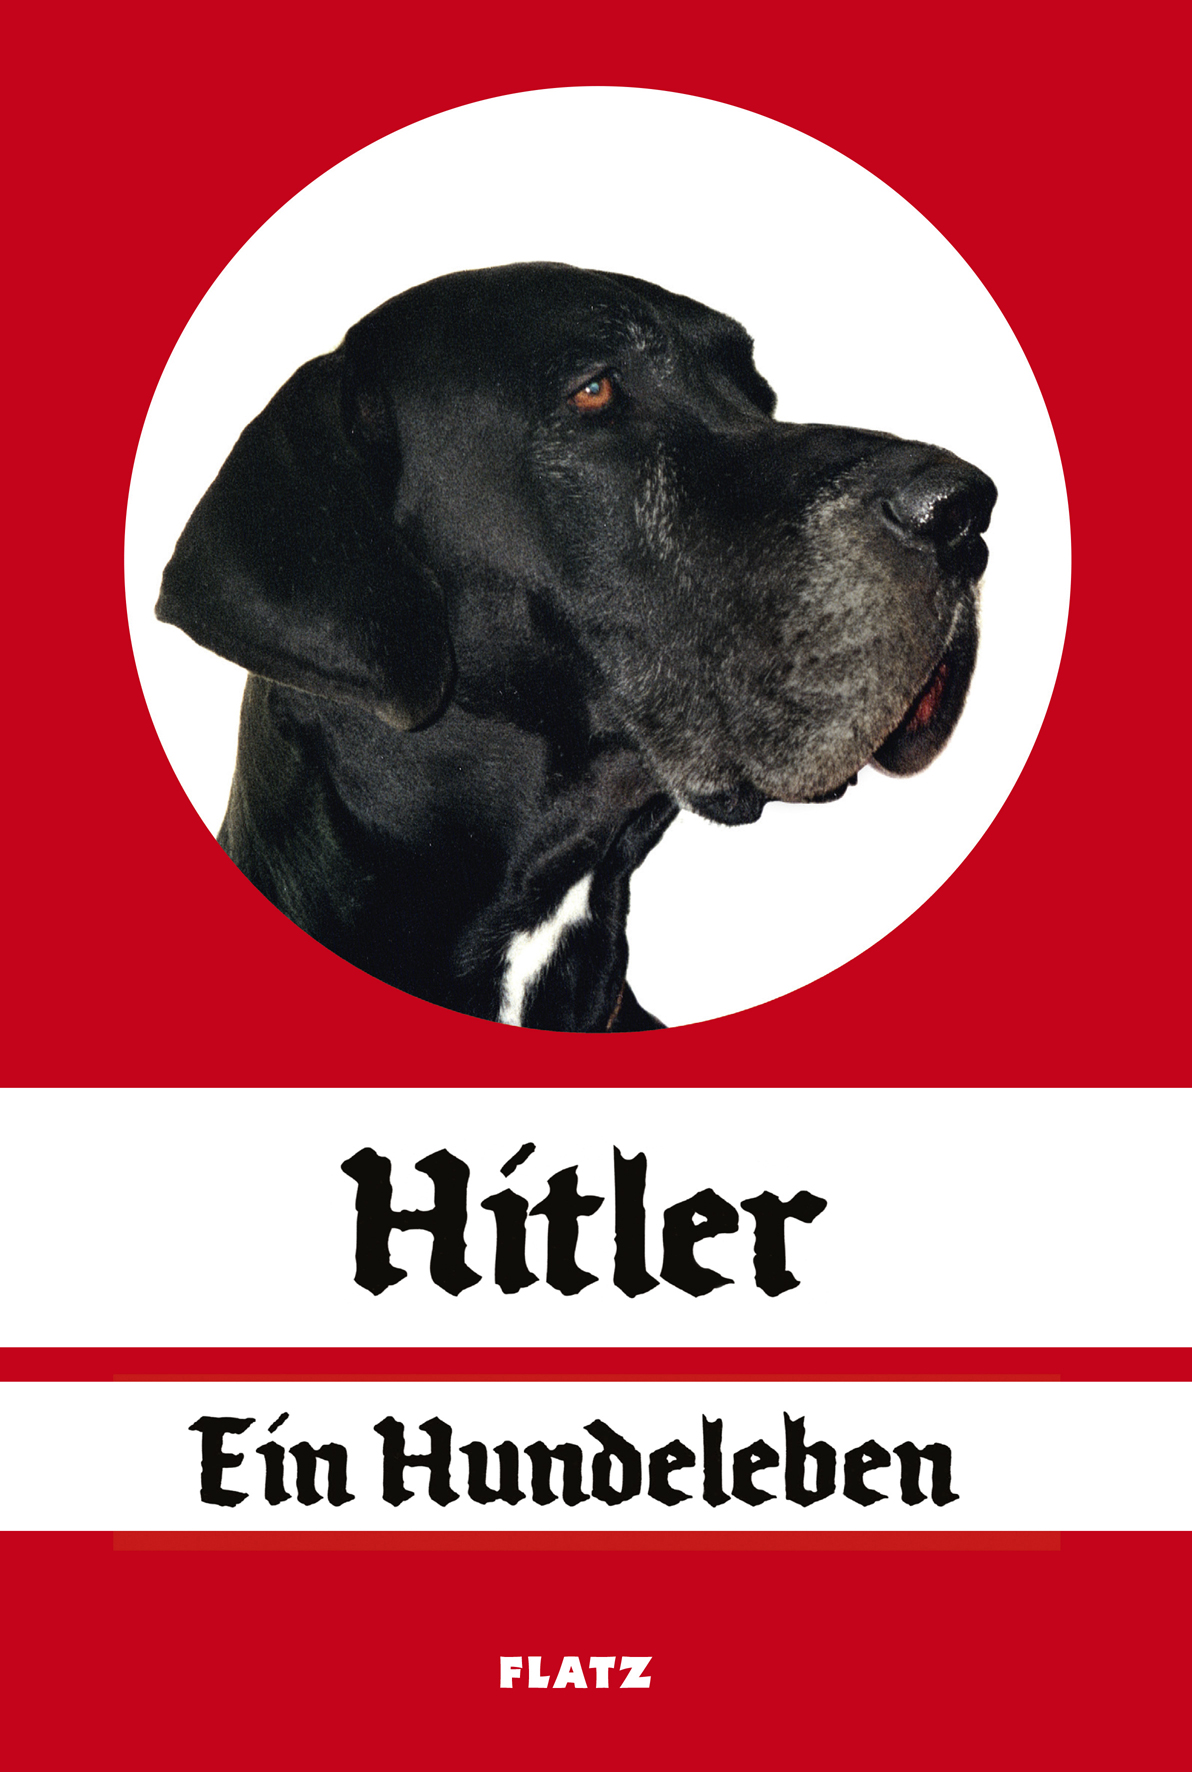 Covergestaltung des Buchs "Hitler. Ein Hundeleben. FLATZ"